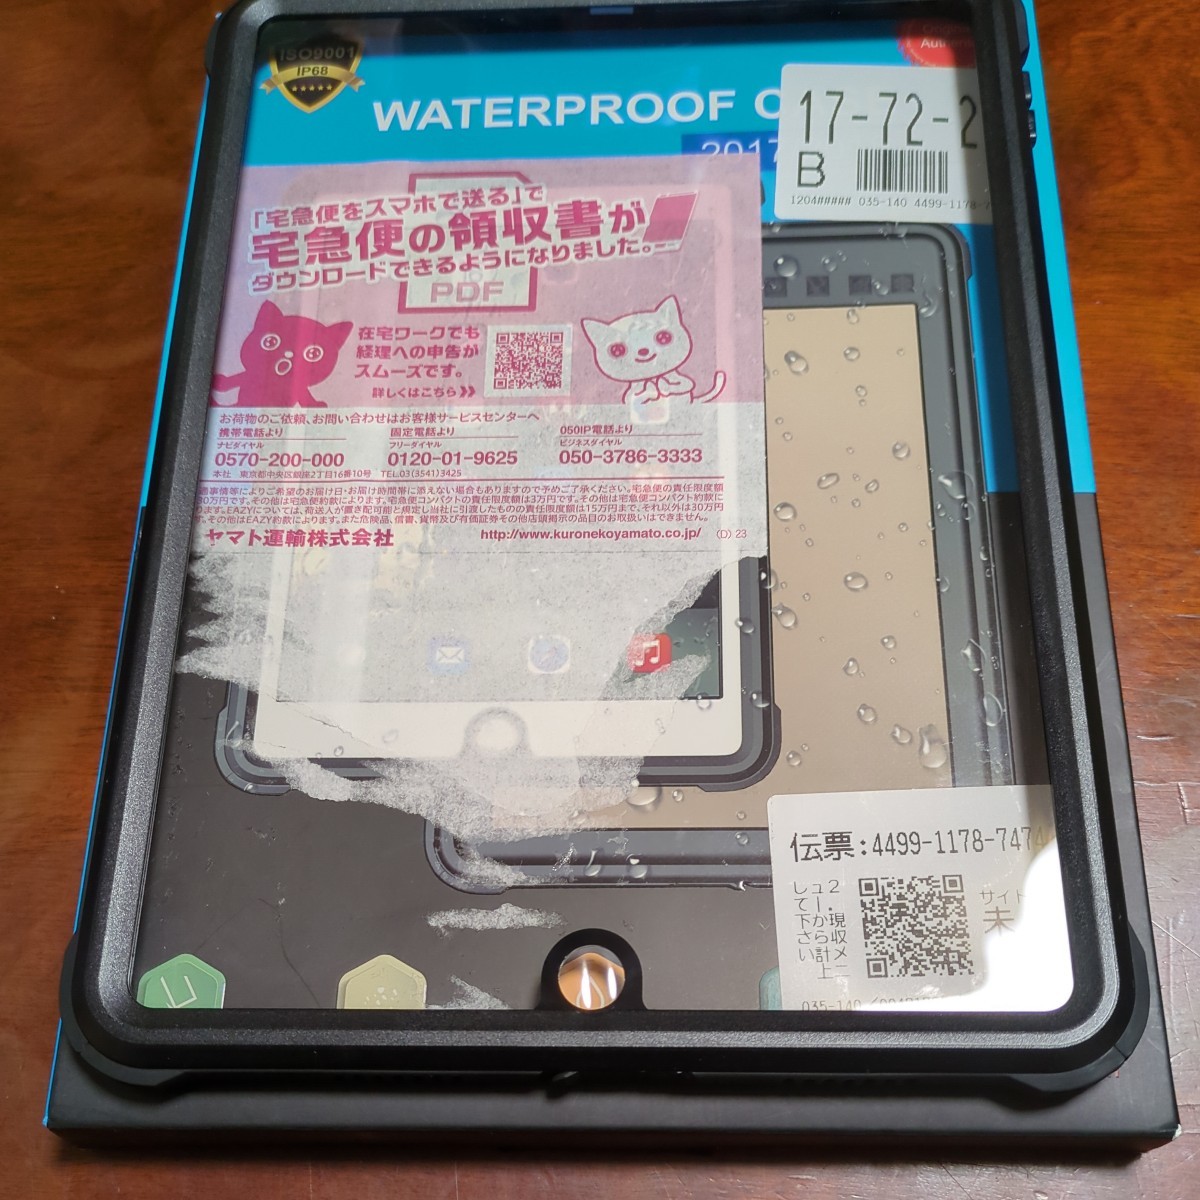 601h2004 iPad 2017/2018 防水ケース 9.7インチ ipadカバー2018 ipad air2 防水ケース IP68 防水規格 軽量 薄型 の画像1